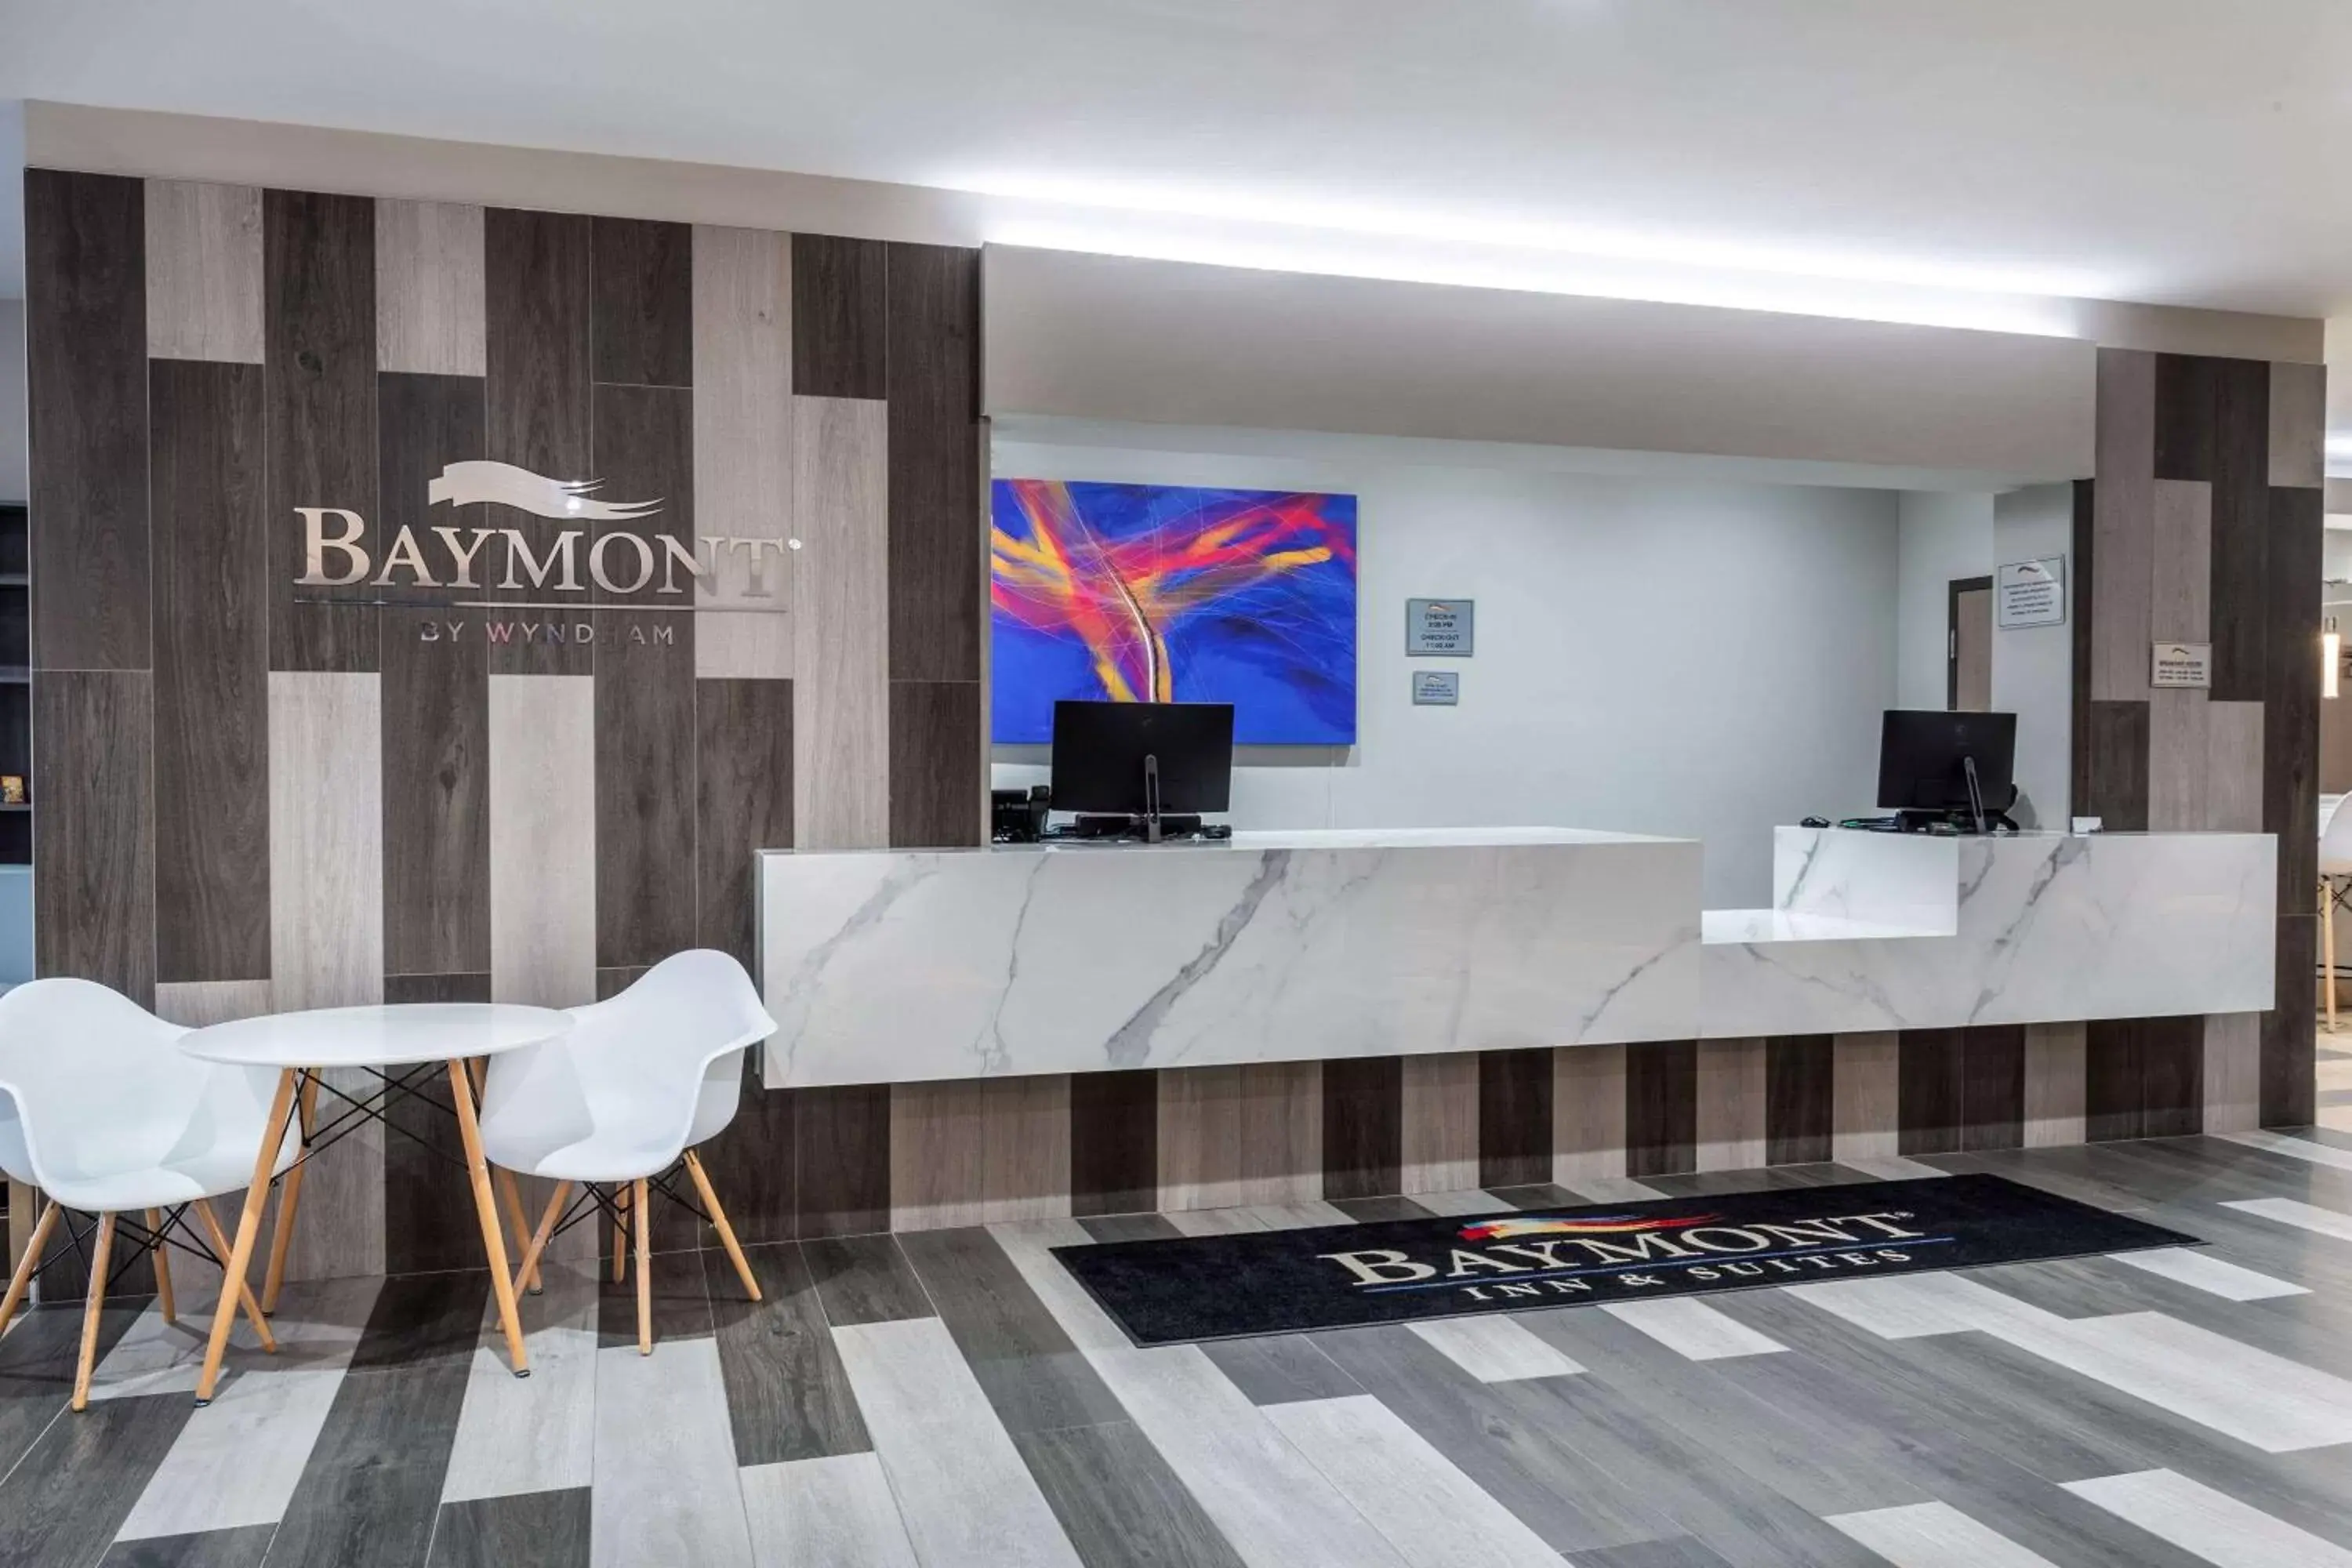 Lobby or reception, Lobby/Reception in Baymont by Wyndham Madison